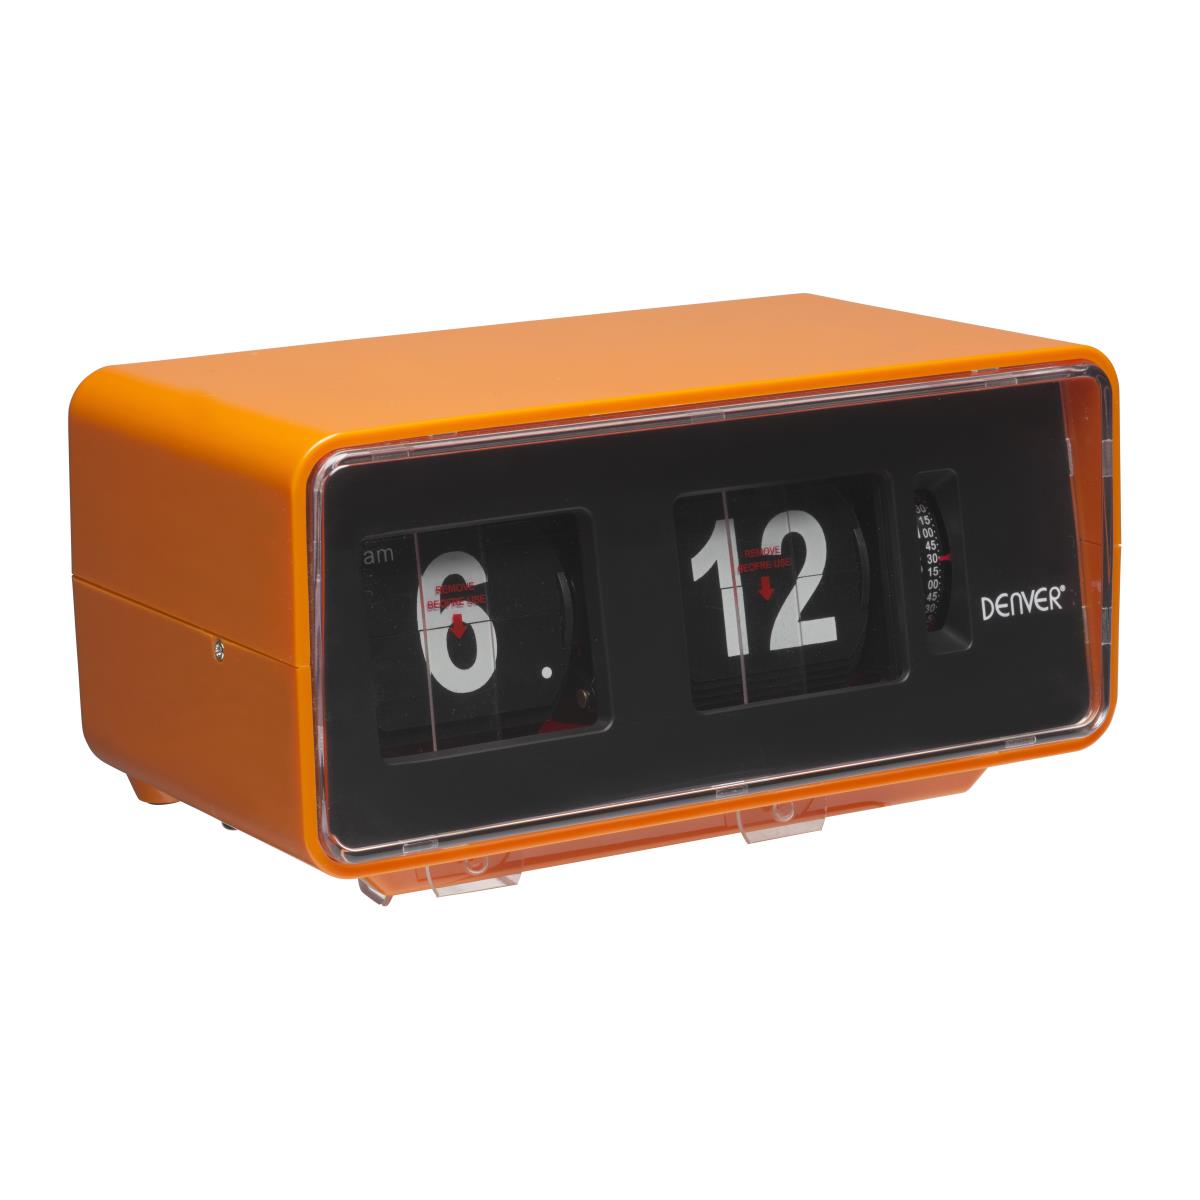 Radio-réveil Duo colors AM/FM double alarme - orange